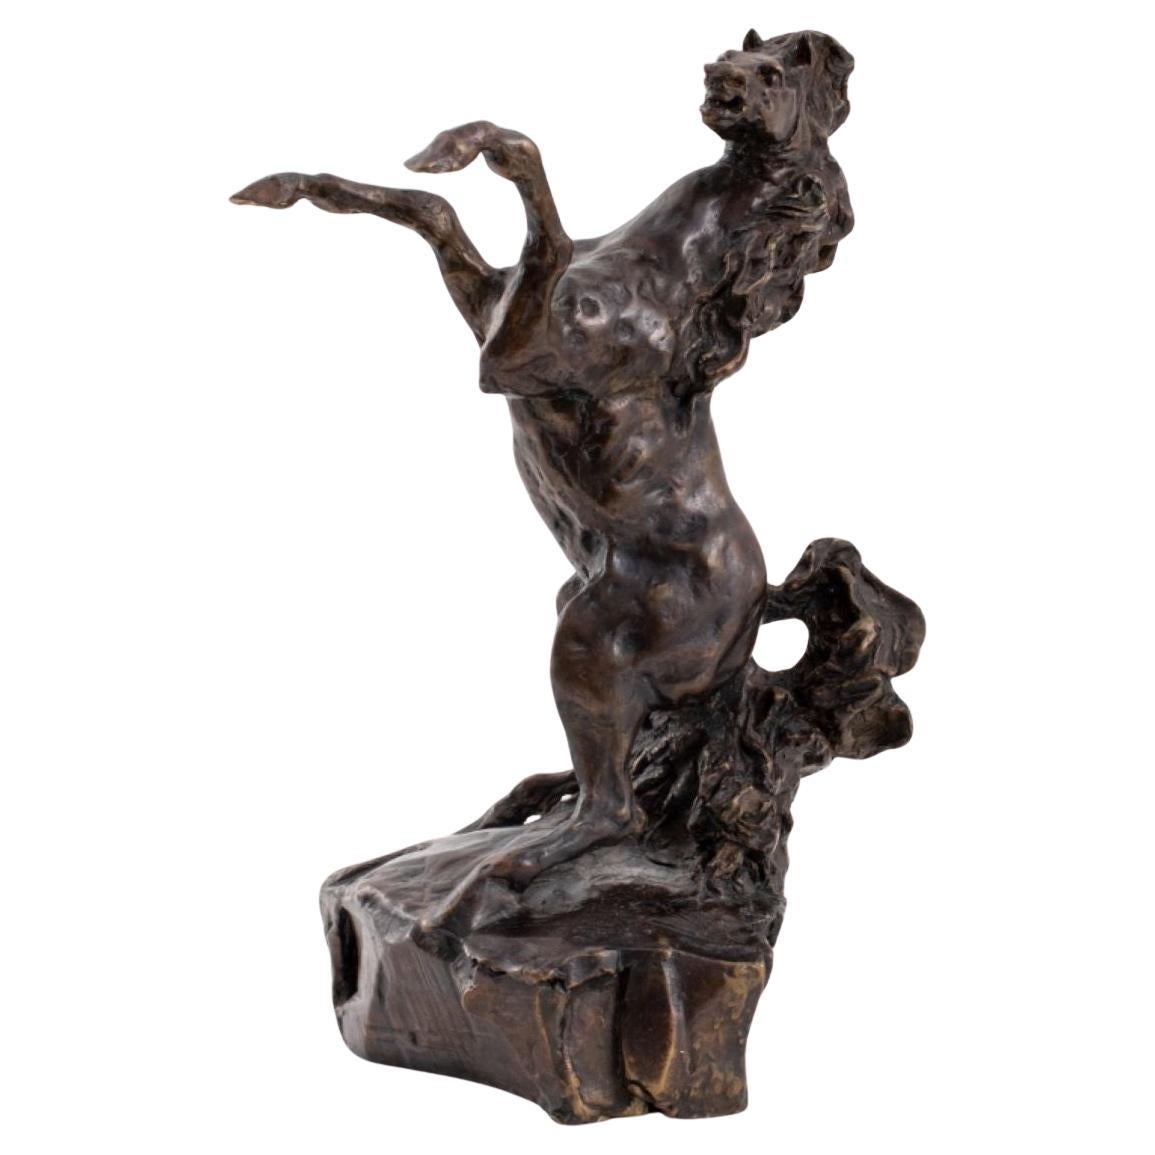 Bronzeskulptur „Defiant“ von LeRoy Neiman, „Defiant“, 1983